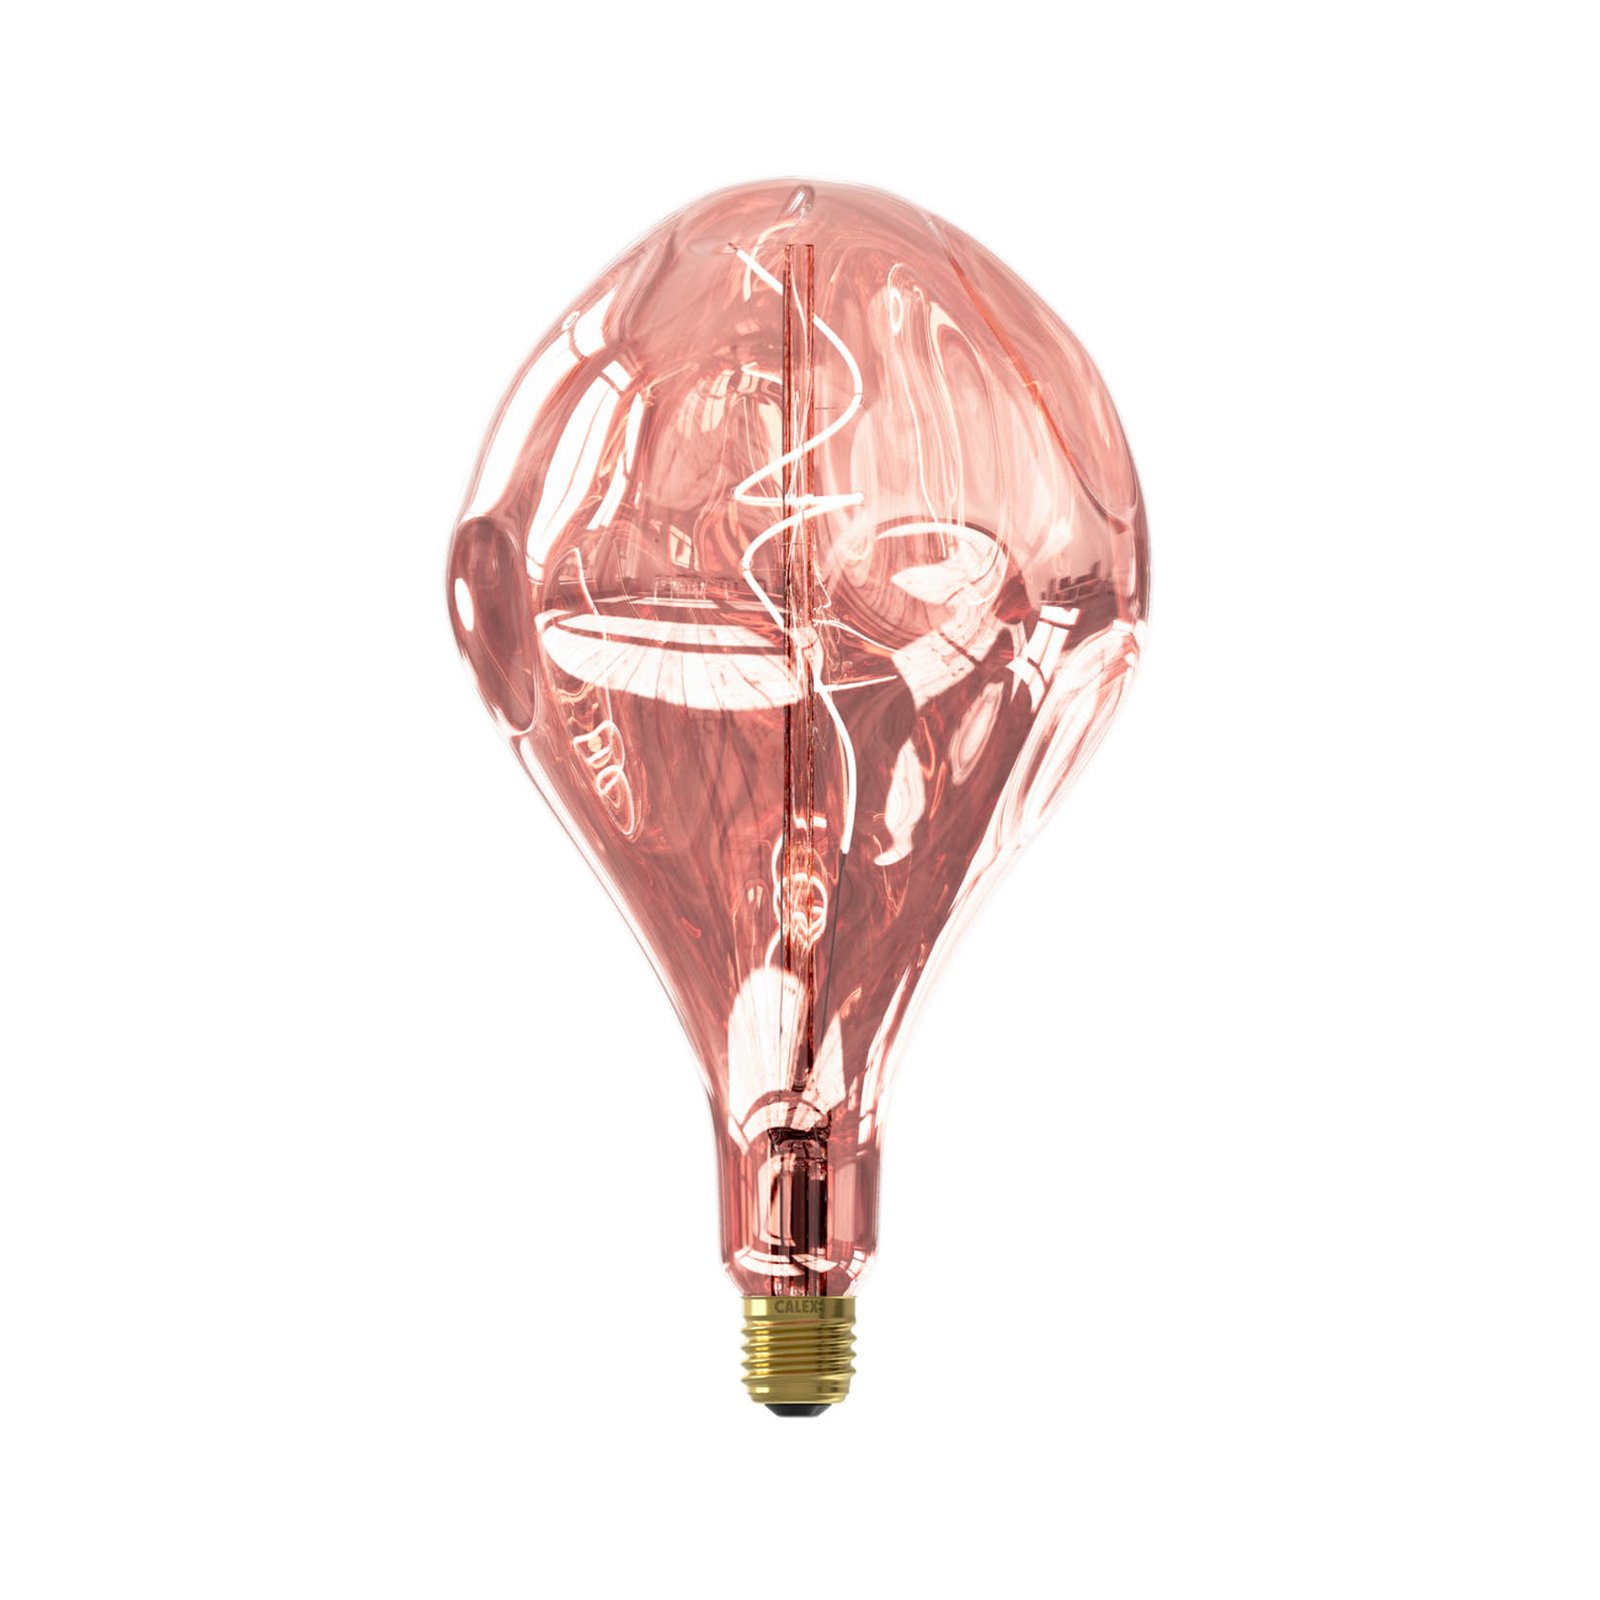 Calex Organic Evo ampoule LED E27 6W dim rosé